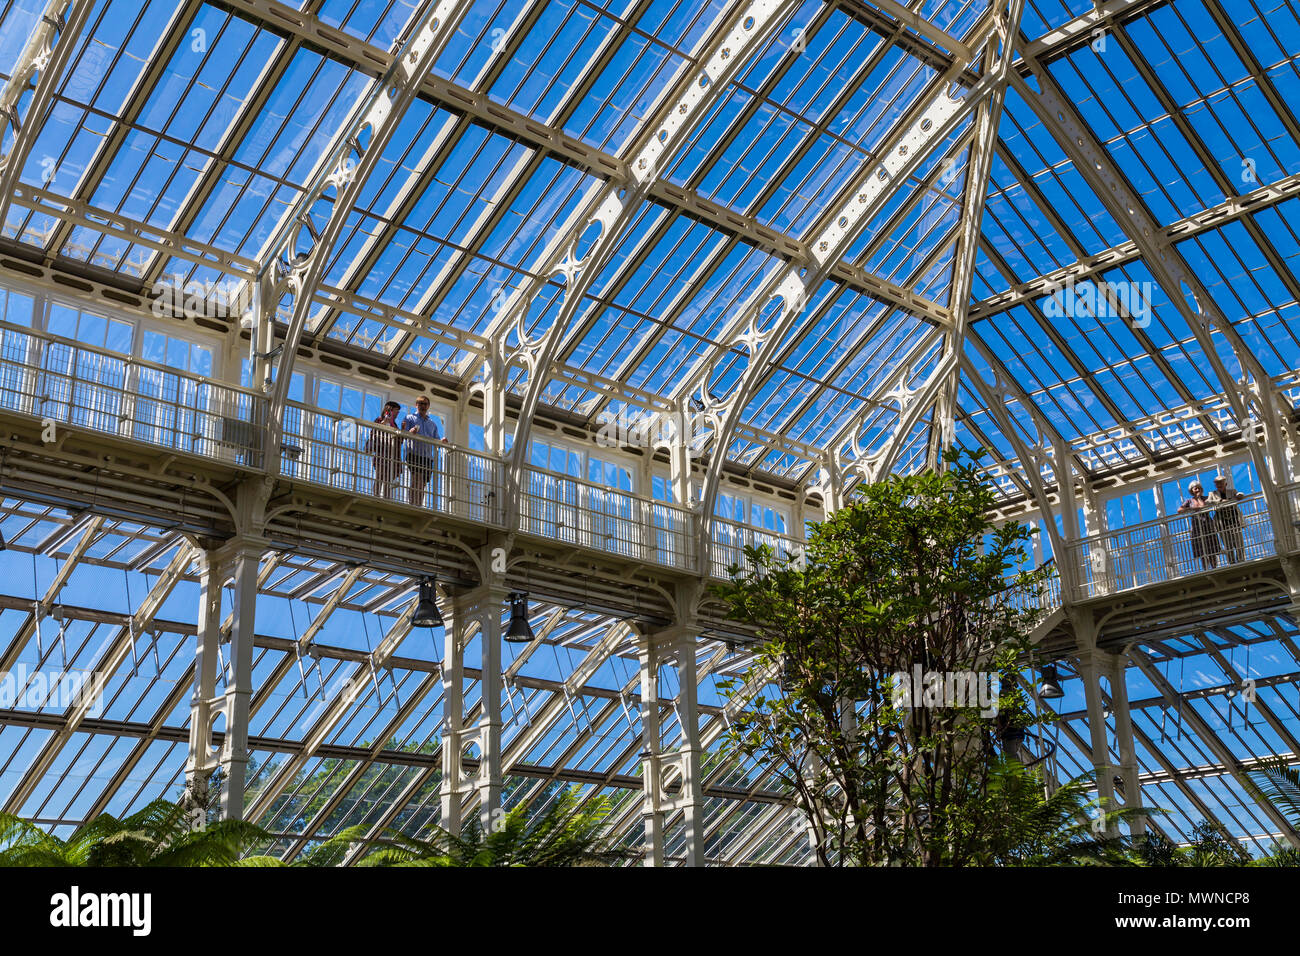 Copertura in ferro e vetro e mezzanine passerelle di recentemente ristrutturato e riaperto Casa Clima temperato in Kew Gardens, London, Regno Unito Foto Stock